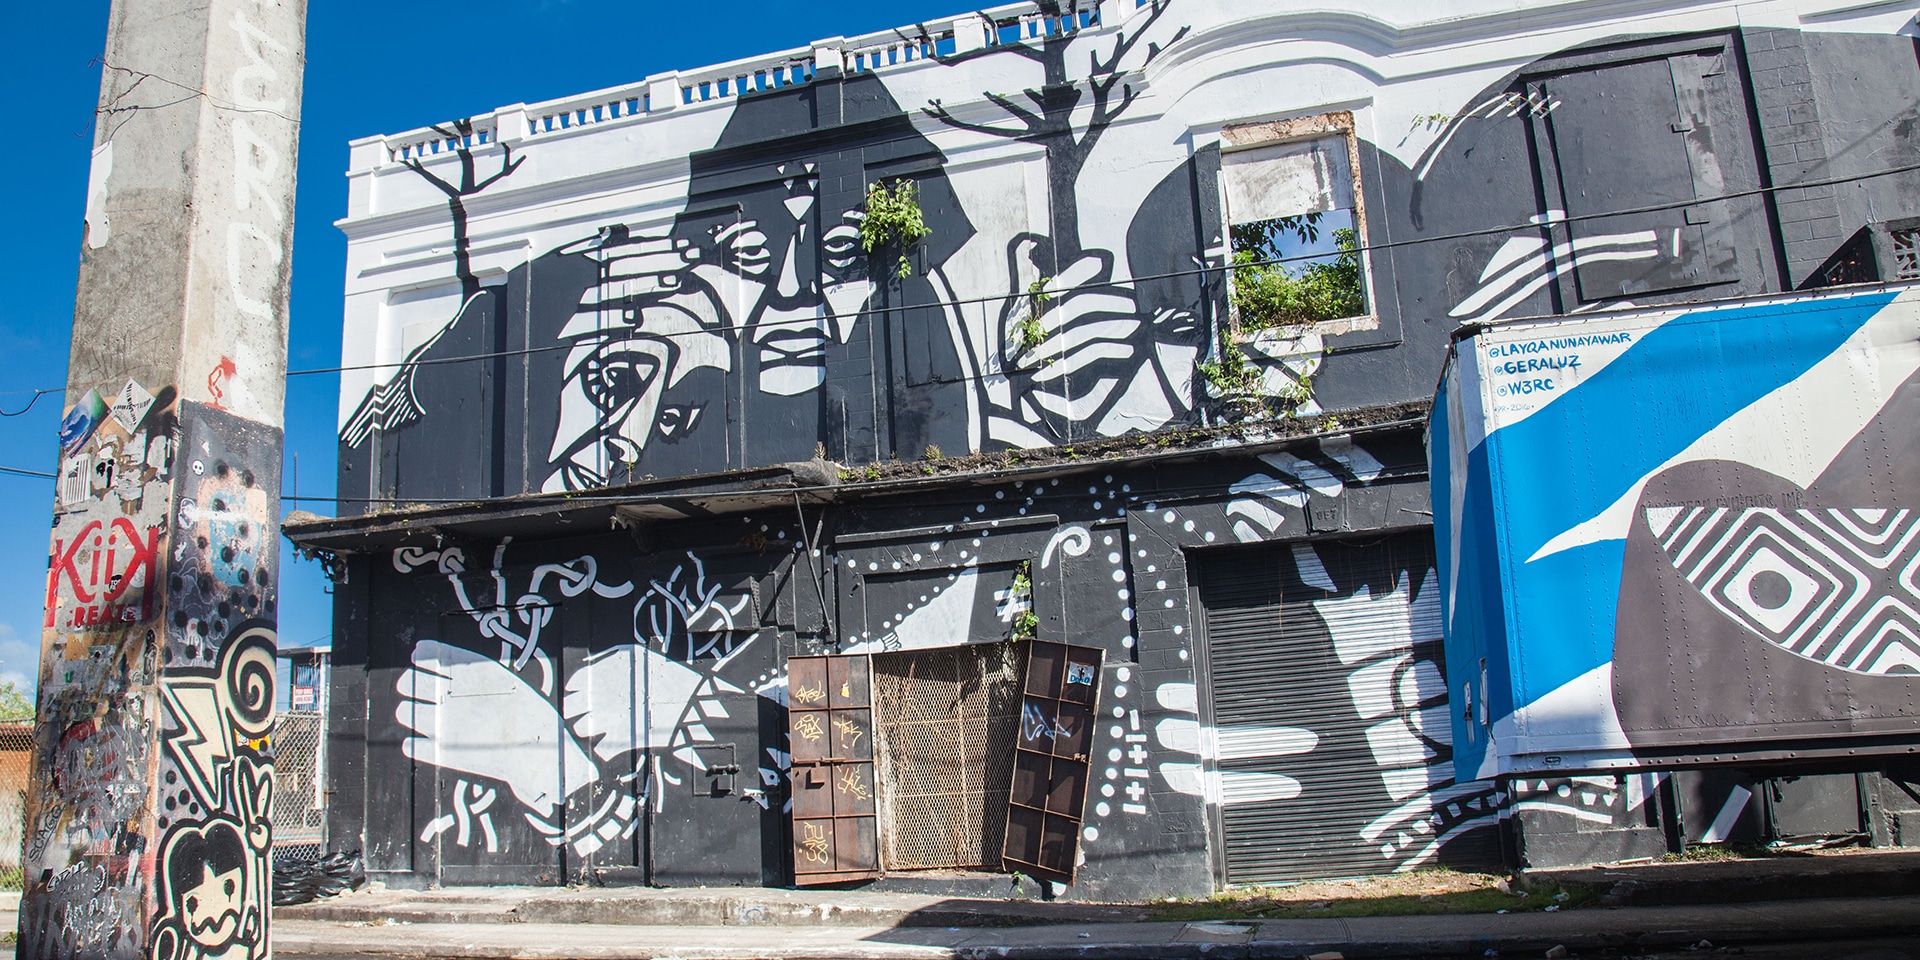 Santurce Street art